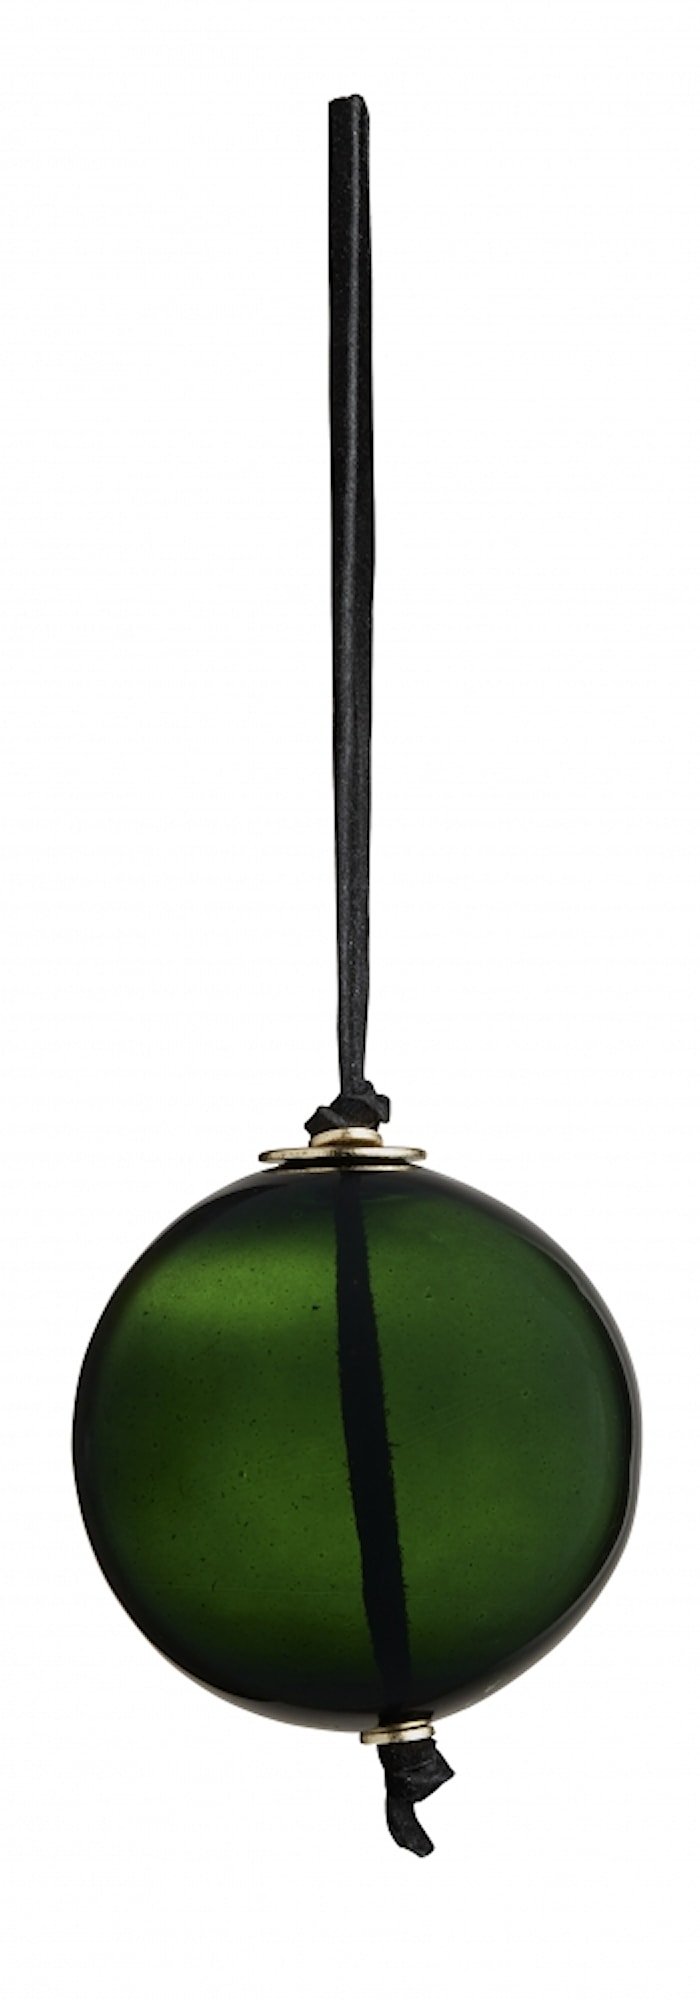 Joulupallo Glass Suede - Tummanvihreä